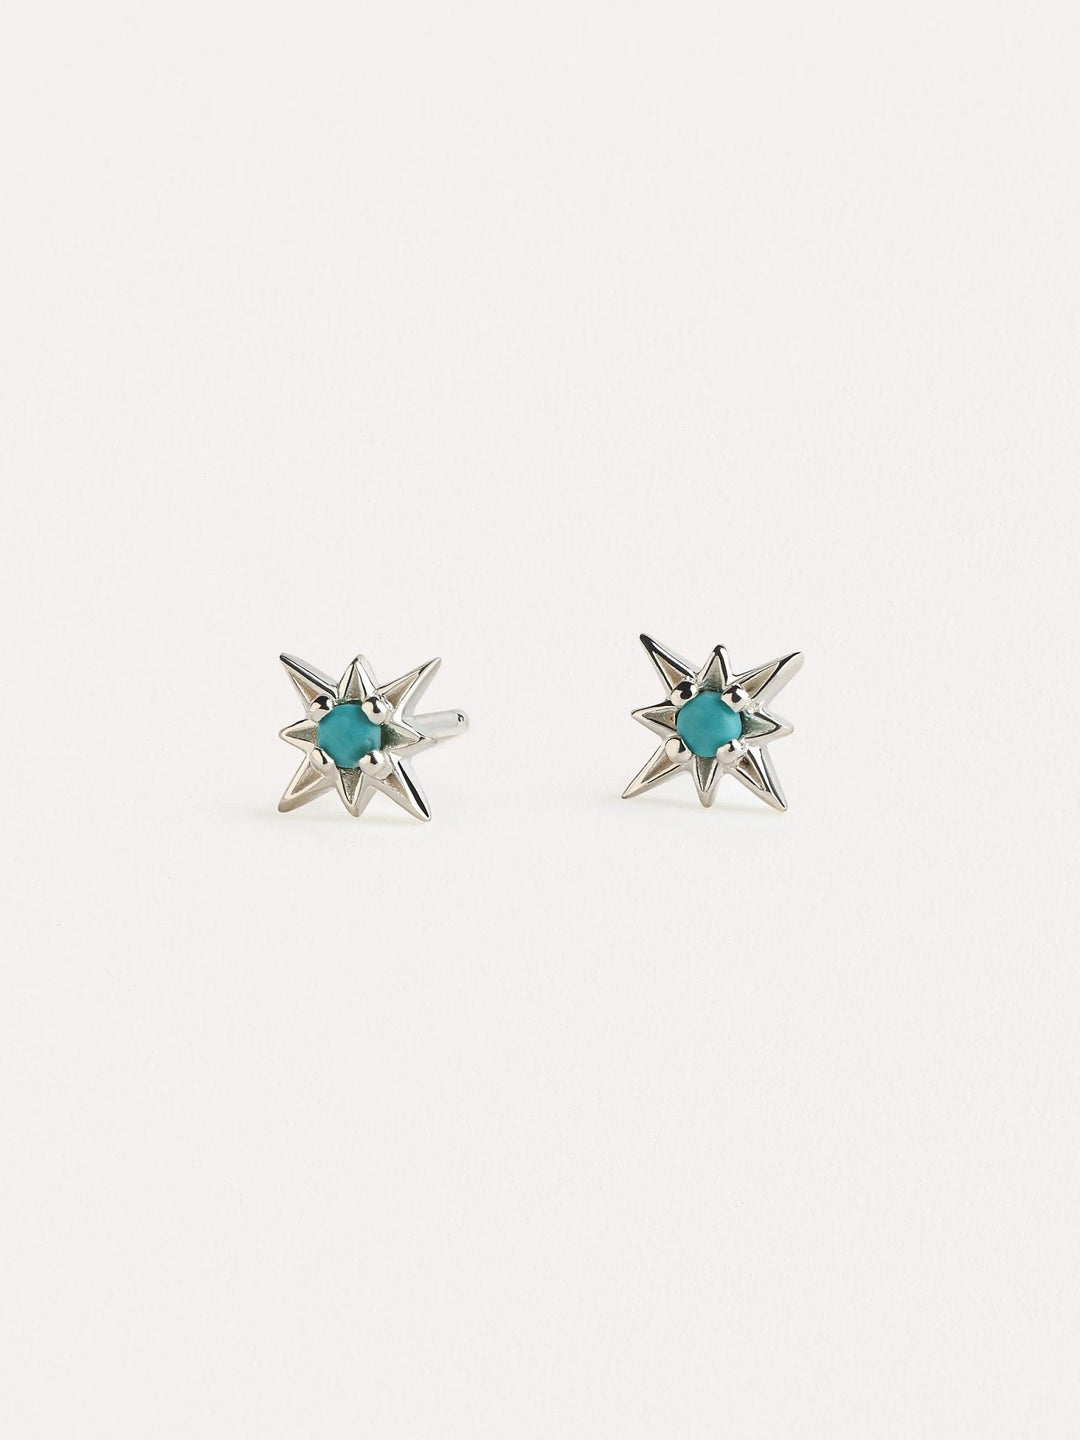 Zelma Turquoise Stud Earrings - 925 Sterling SilverBackUpItemsChain Drop EarringsLunai Jewelry